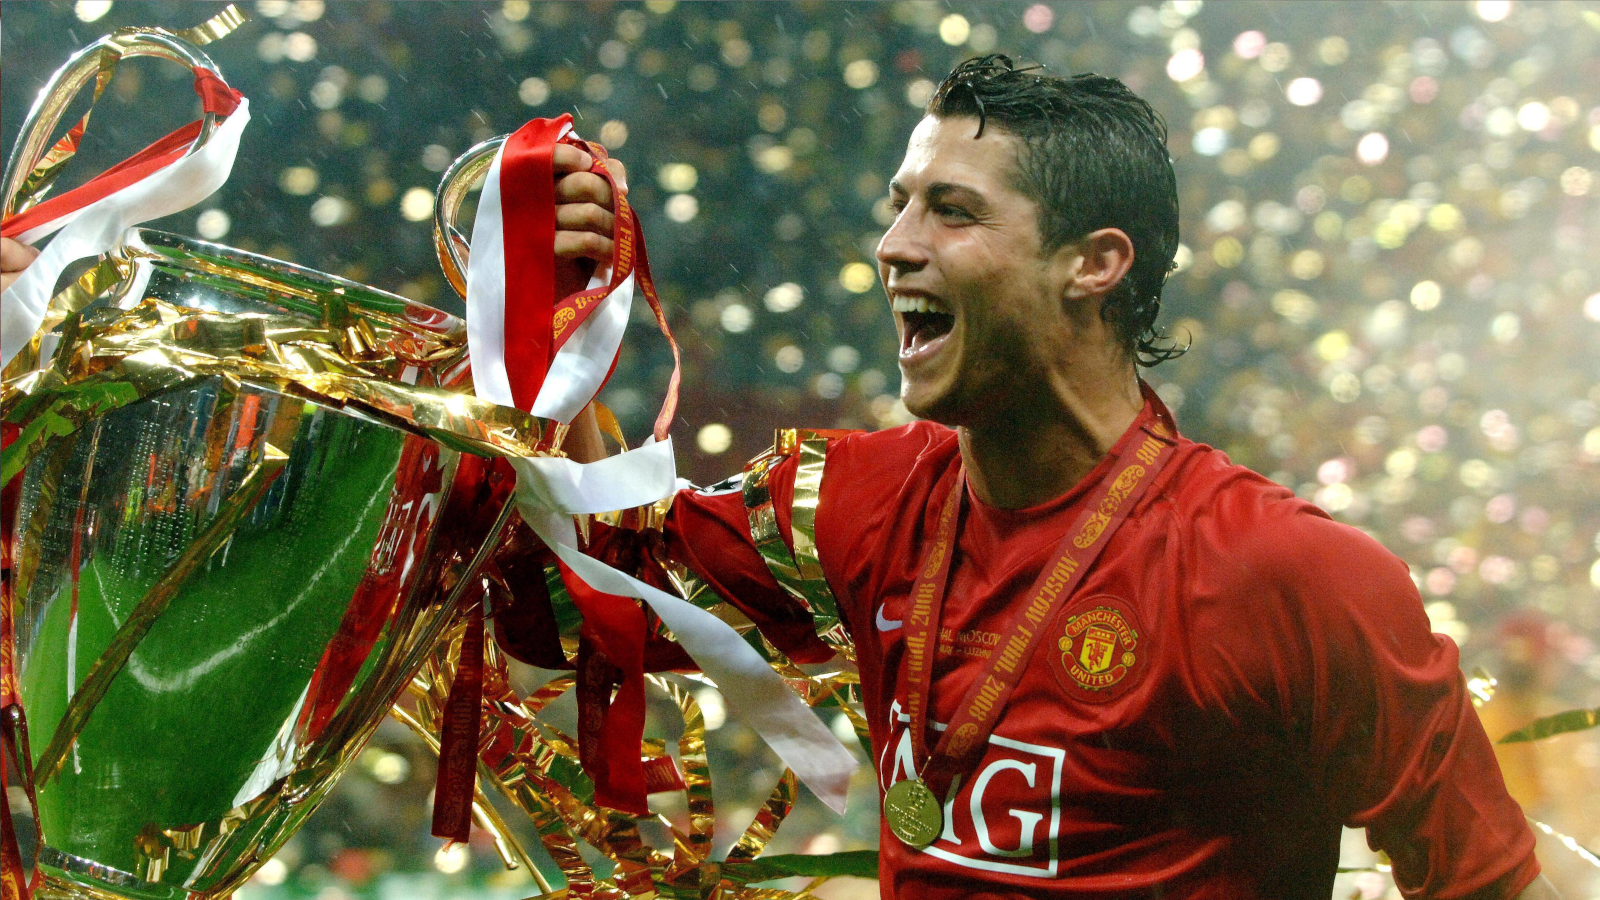 
                <strong>Erster Triumph in der Champions League</strong><br>
                Der größte Erfolg ist der Gewinn des Champions-League-Titels 2008. Ronaldo trägt in elf Spielen acht Tore bei und ist so einer der großen Stützen seines Teams.
              